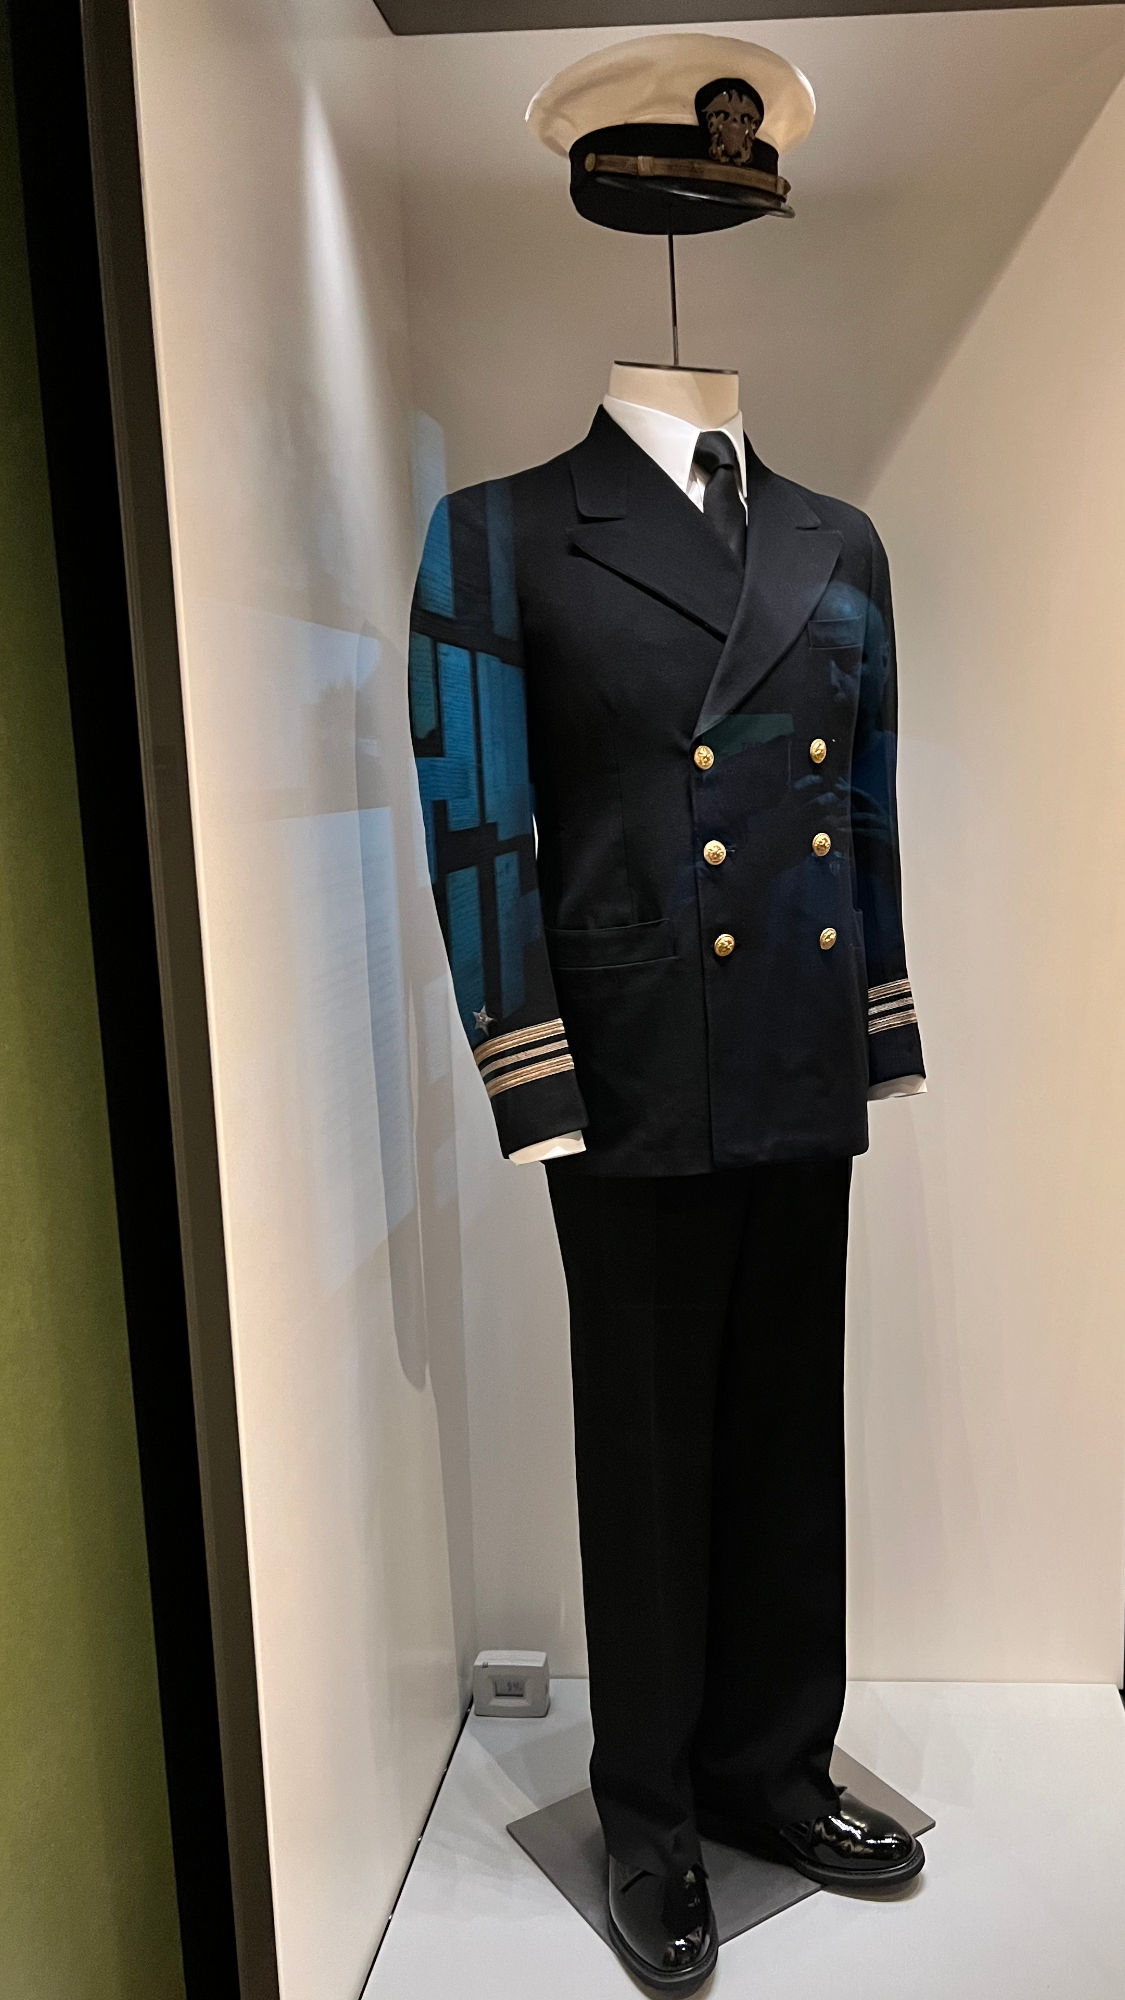 Richard Nixon Navy Uniform